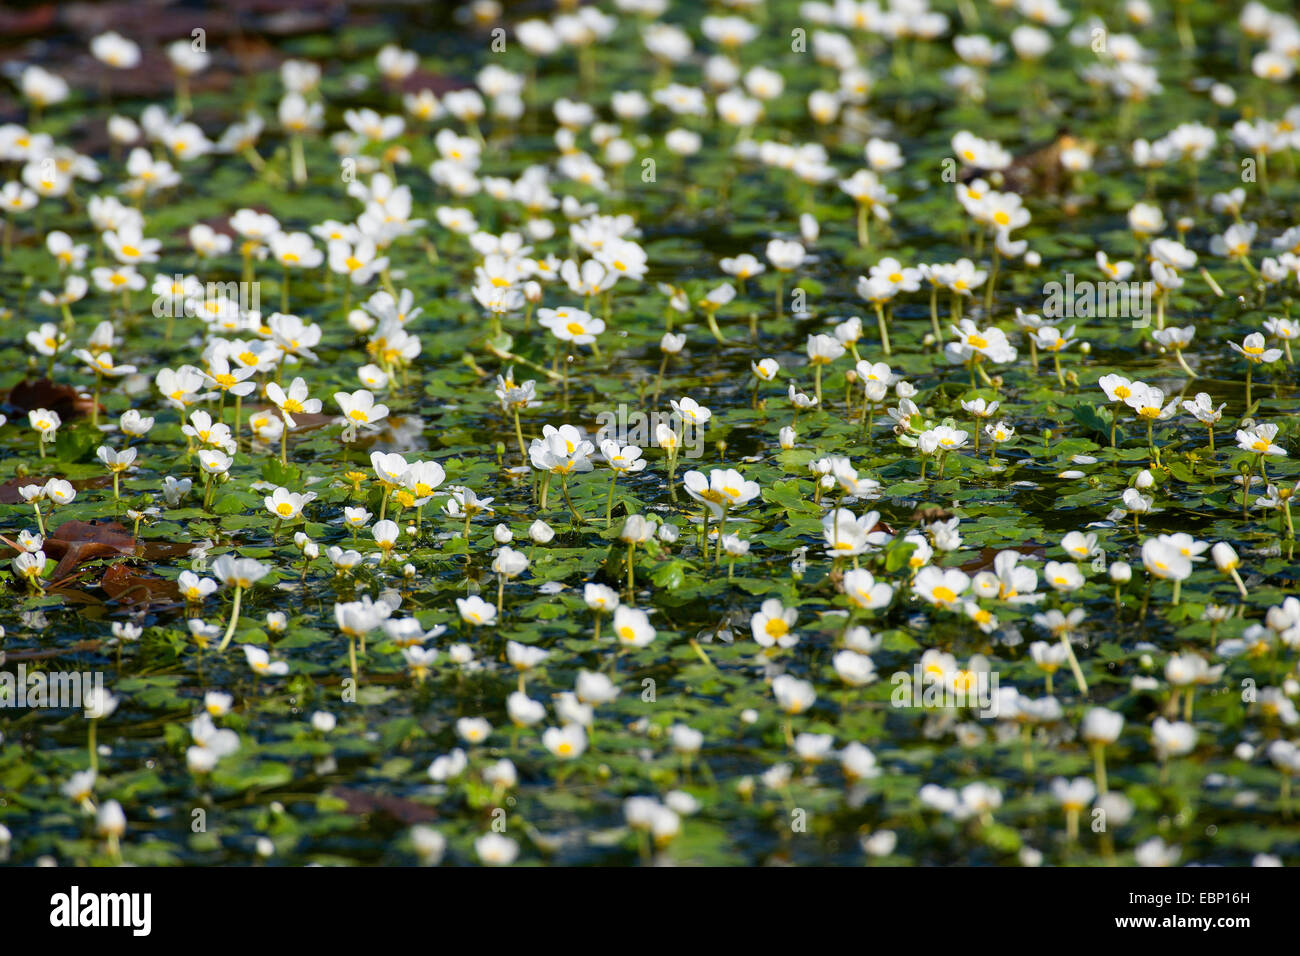 Pond Water-crowfoot, Pond Water crowfoot (Ranunculus peltatus, Ranunculus aquatilis ssp. peltatus), blooming, Germany Stock Photo